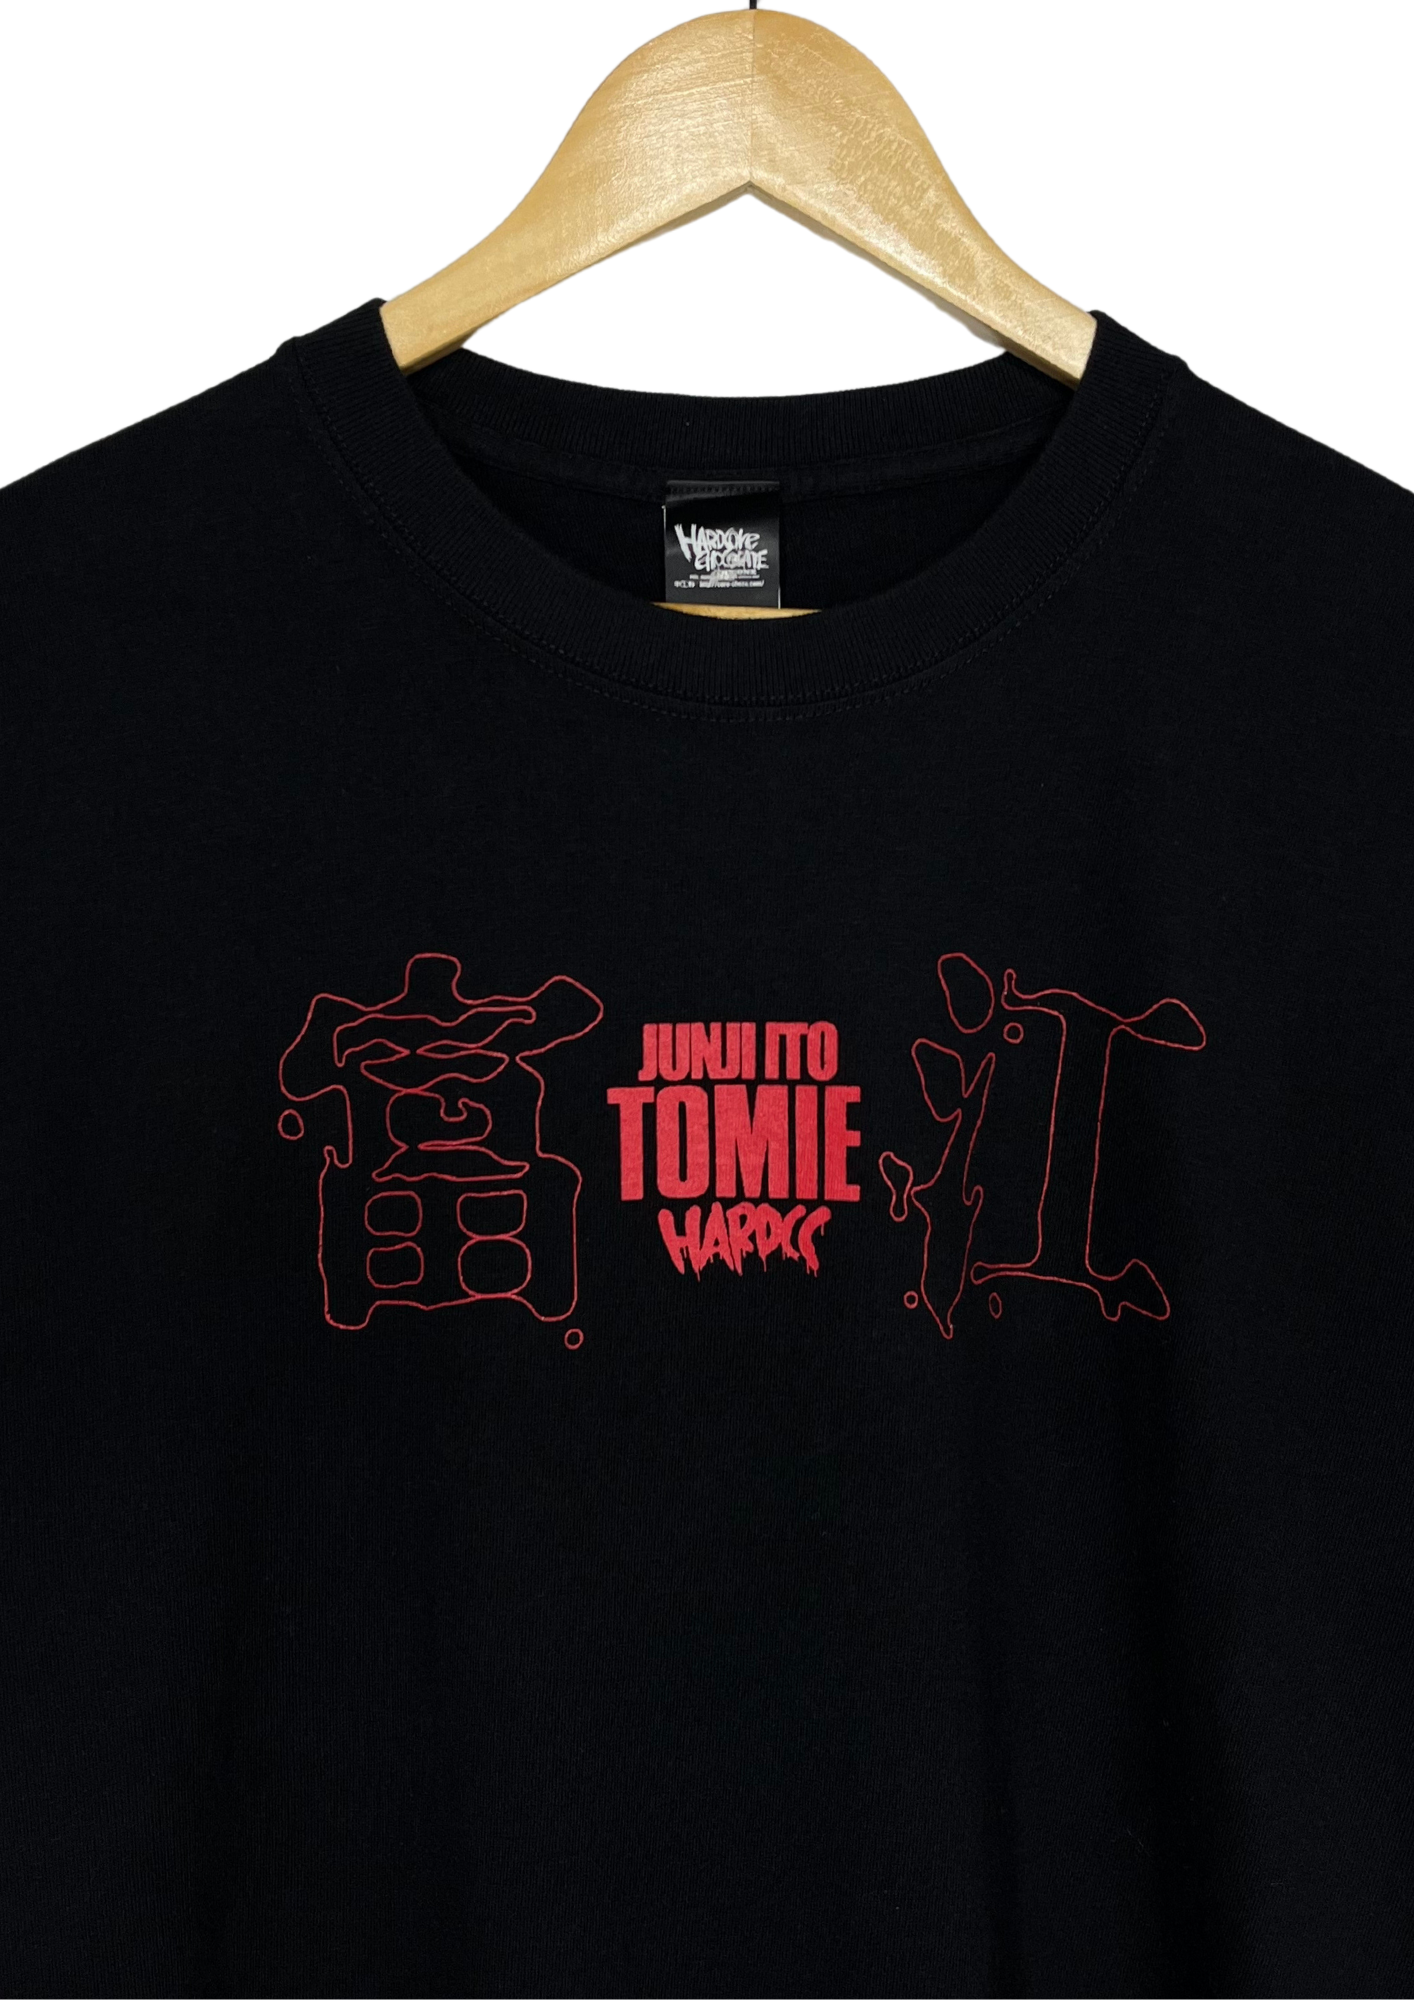 Junji Ito x Hardcore Chocolate Tomie T-shirt